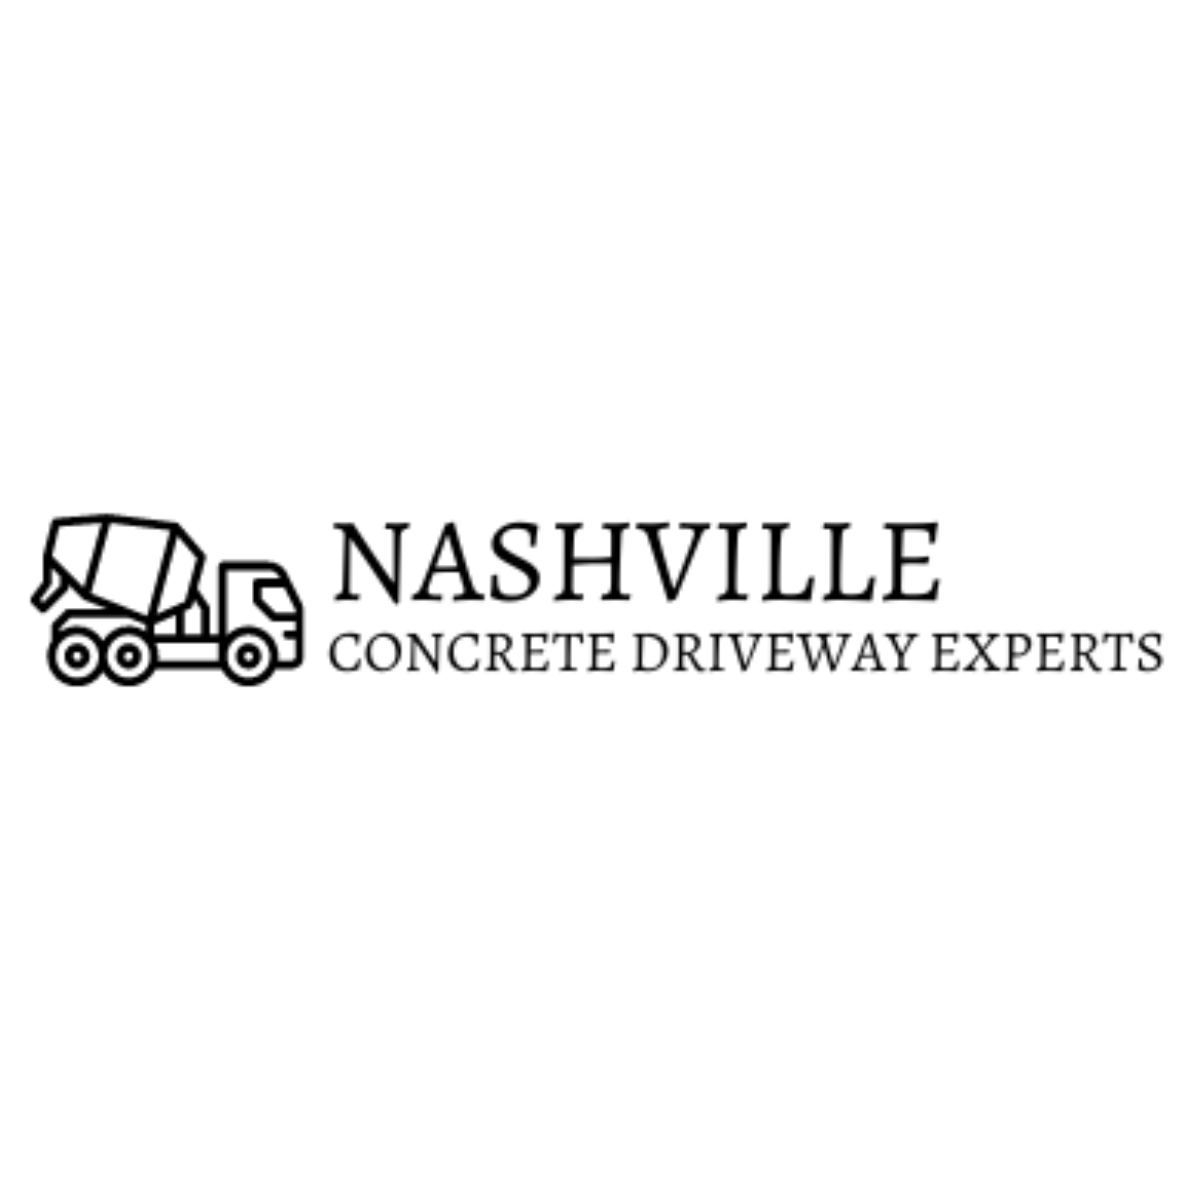 Nashville Concrete Driveway Experts